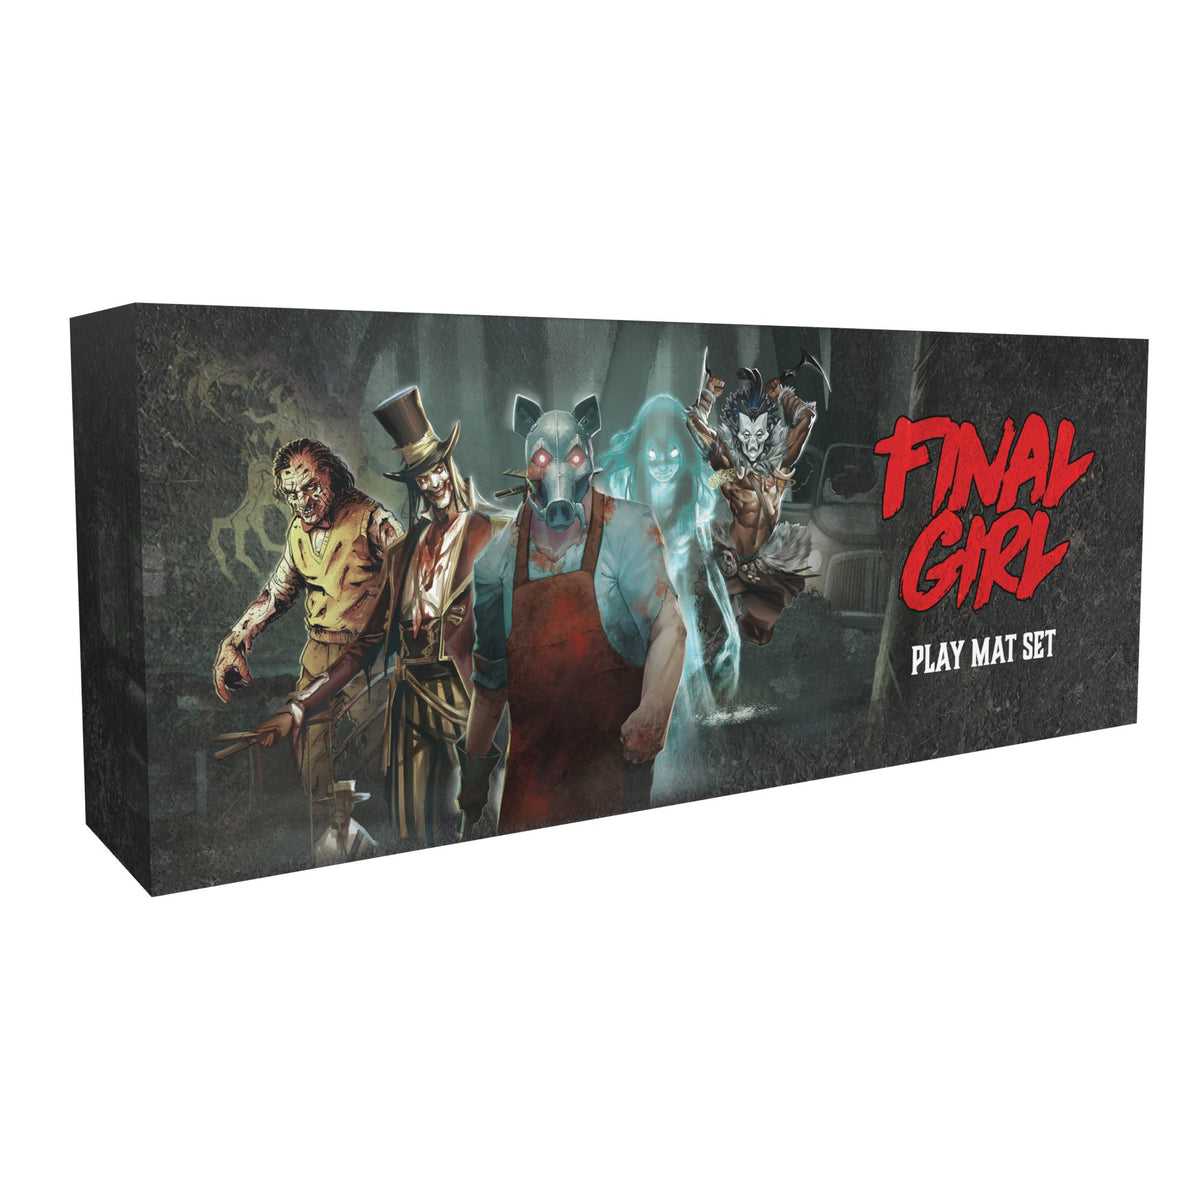 Final Girl: Play Mat Set (Series 1)